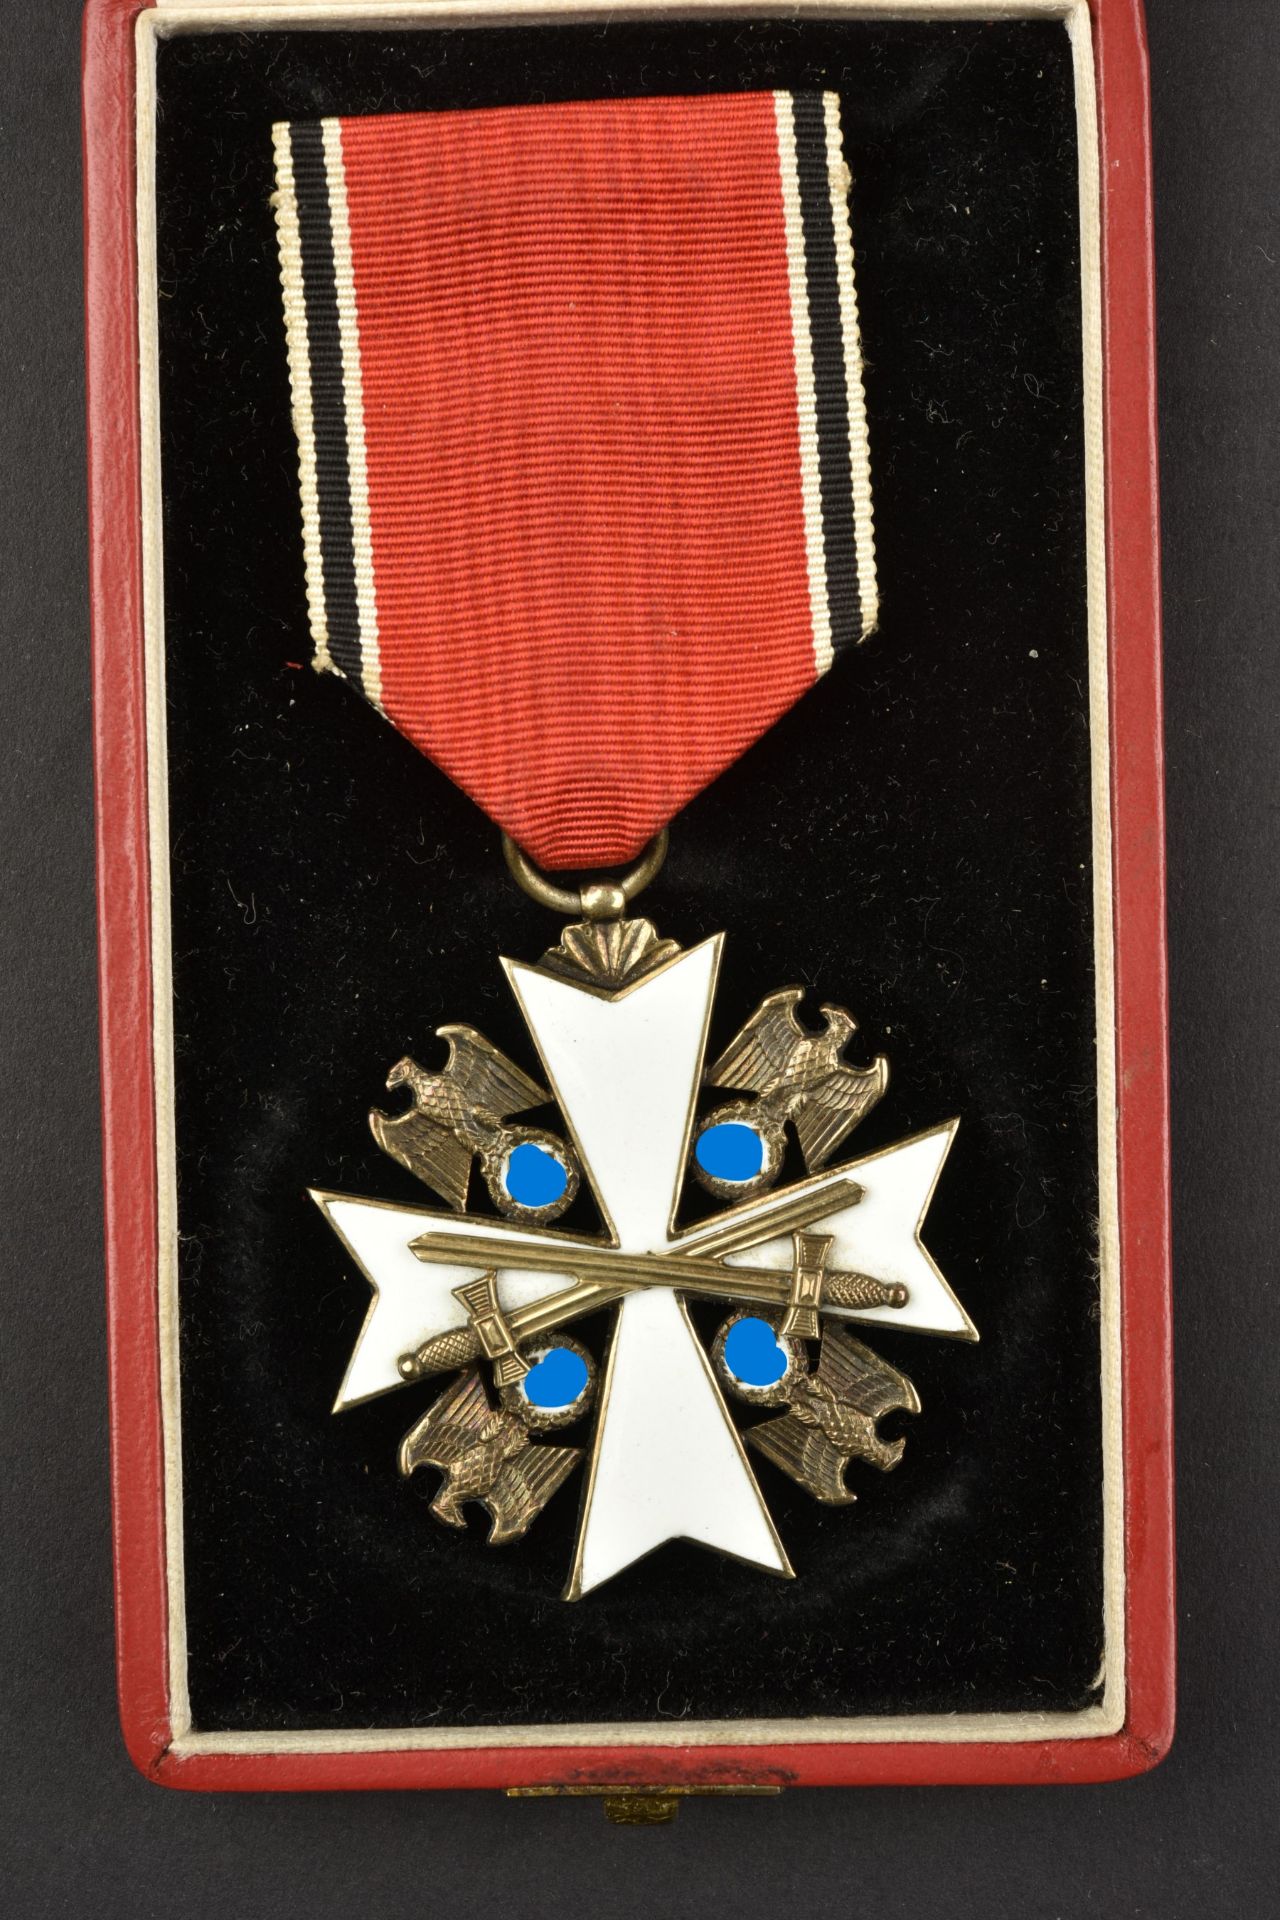 Medaille Deutsche Adler. Deutsche Adler medals. - Image 8 of 8